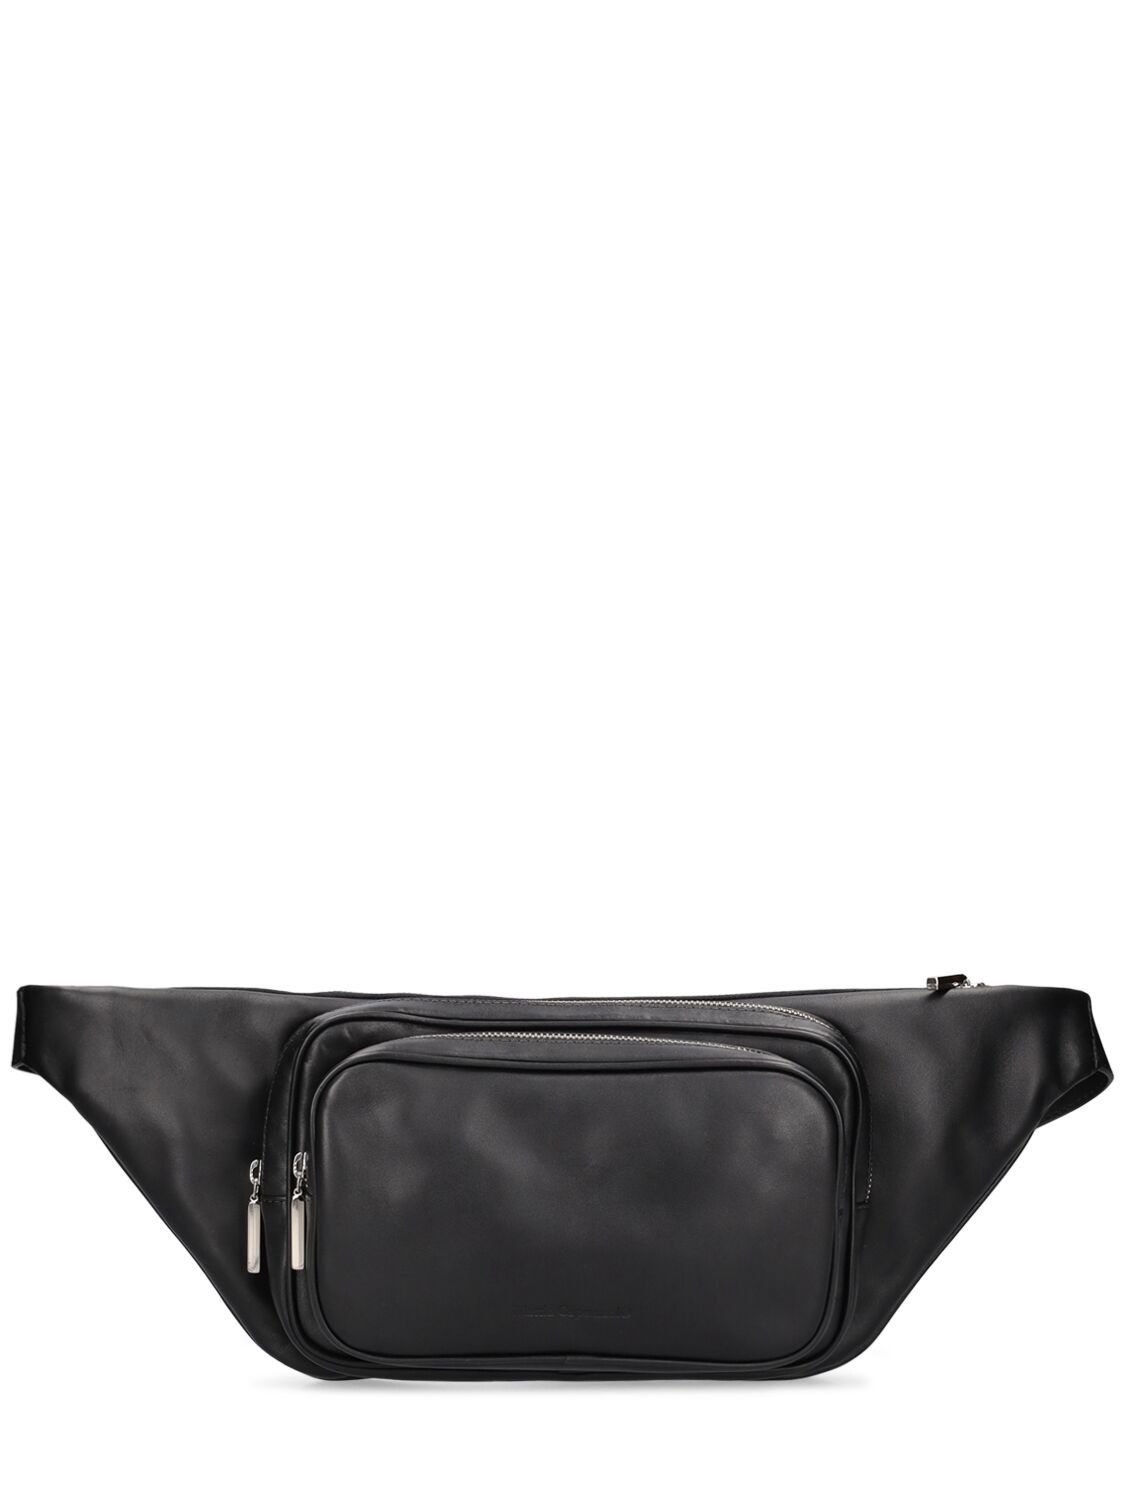 Mattia Capezzani Leather Belt Bag In Black